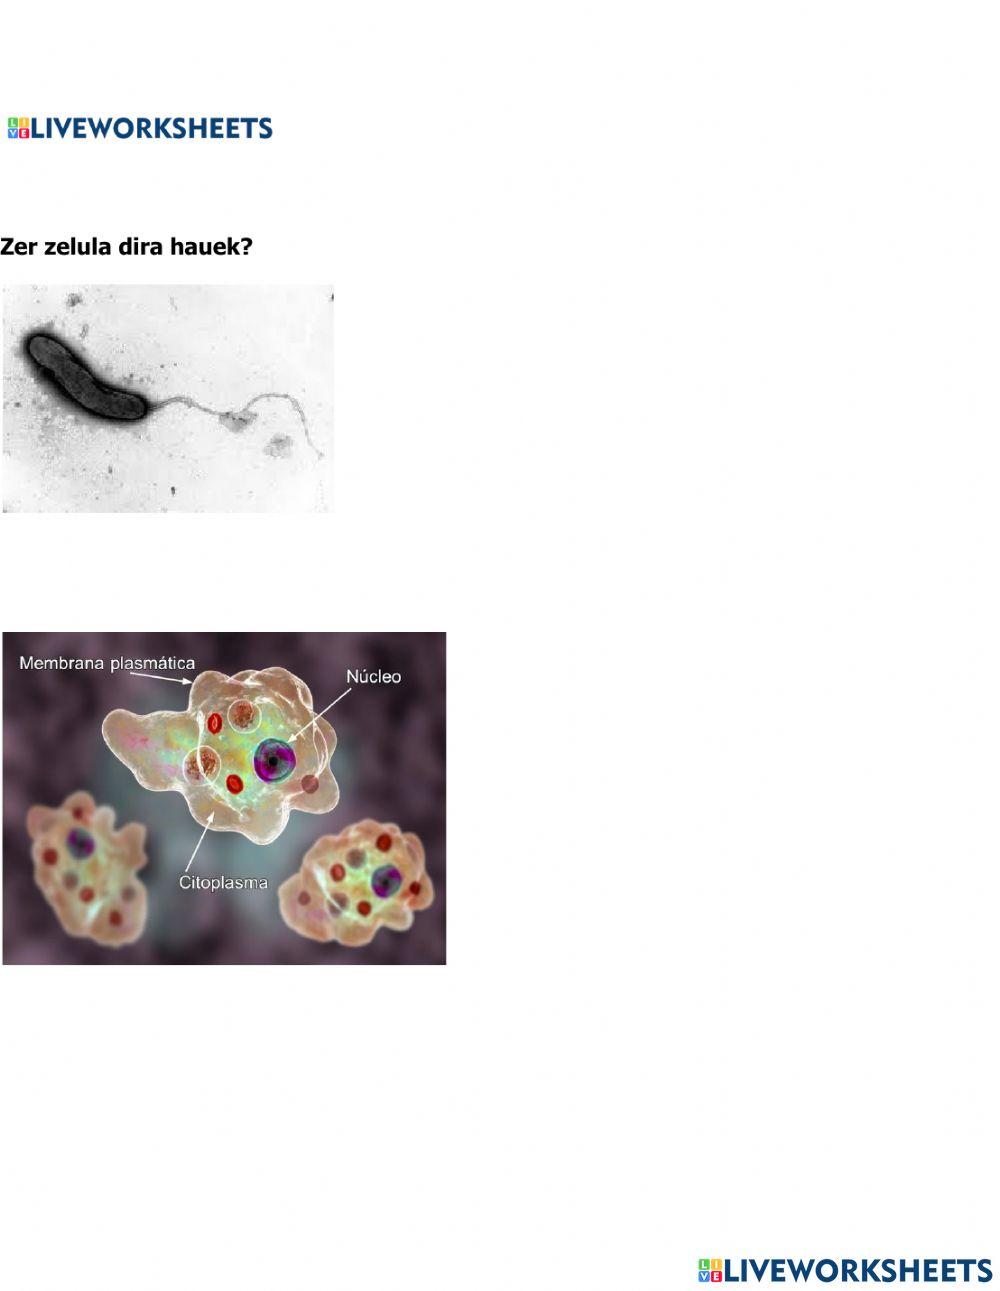 Zelula eukaitoa eta prokariotoa